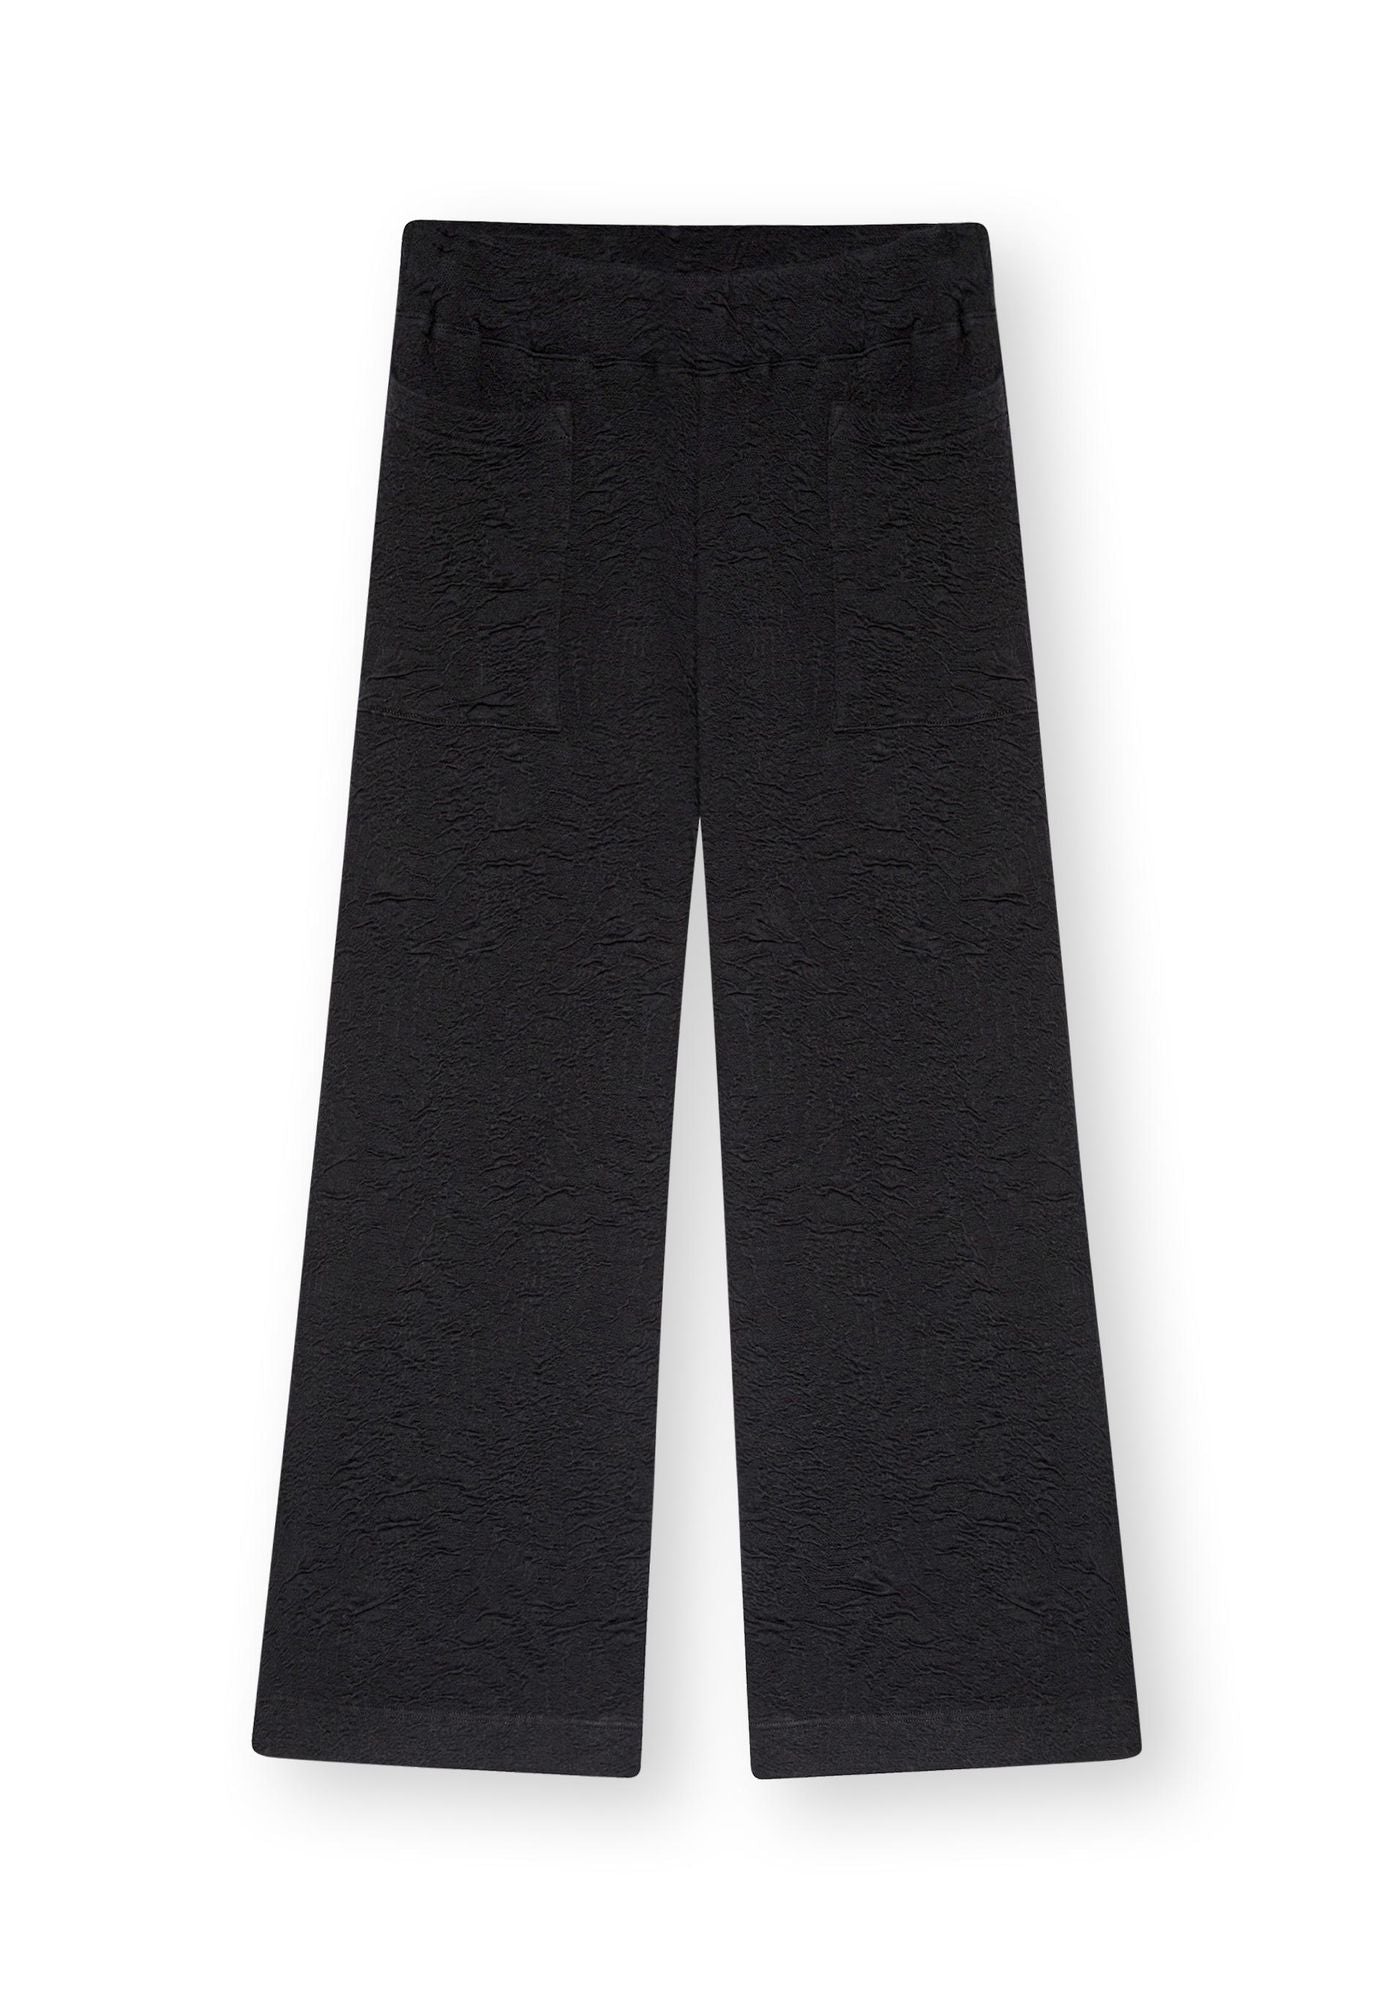 Hose MALME in Culotte-Form in schwarz von LOVJOI aus Bio-Baumwolle